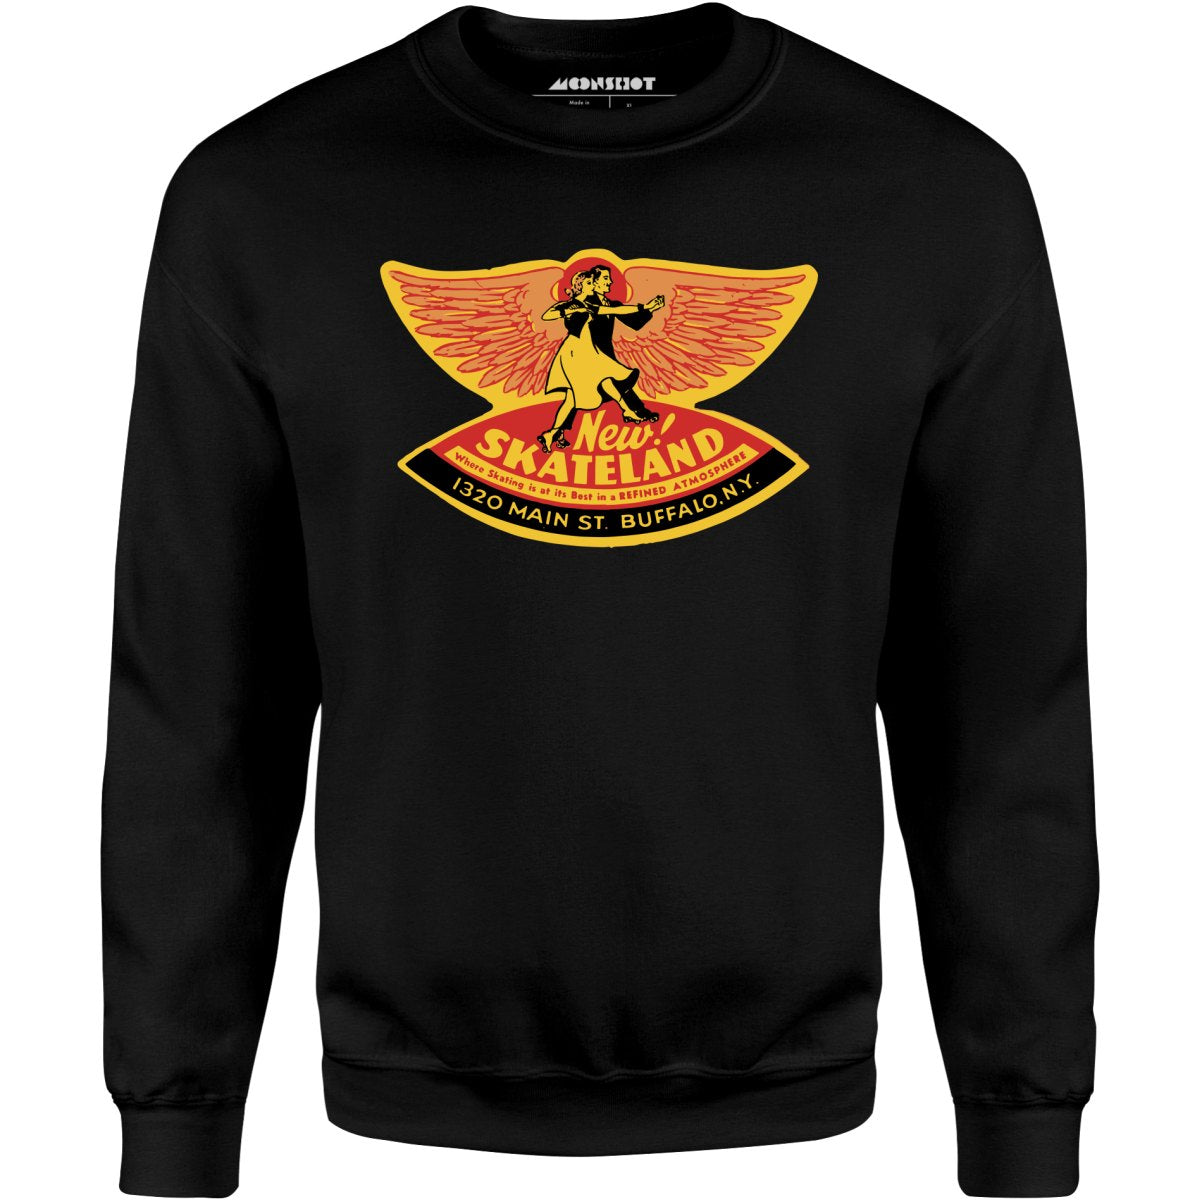 New Skateland - Buffalo, NY - Vintage Roller Rink - Unisex Sweatshirt